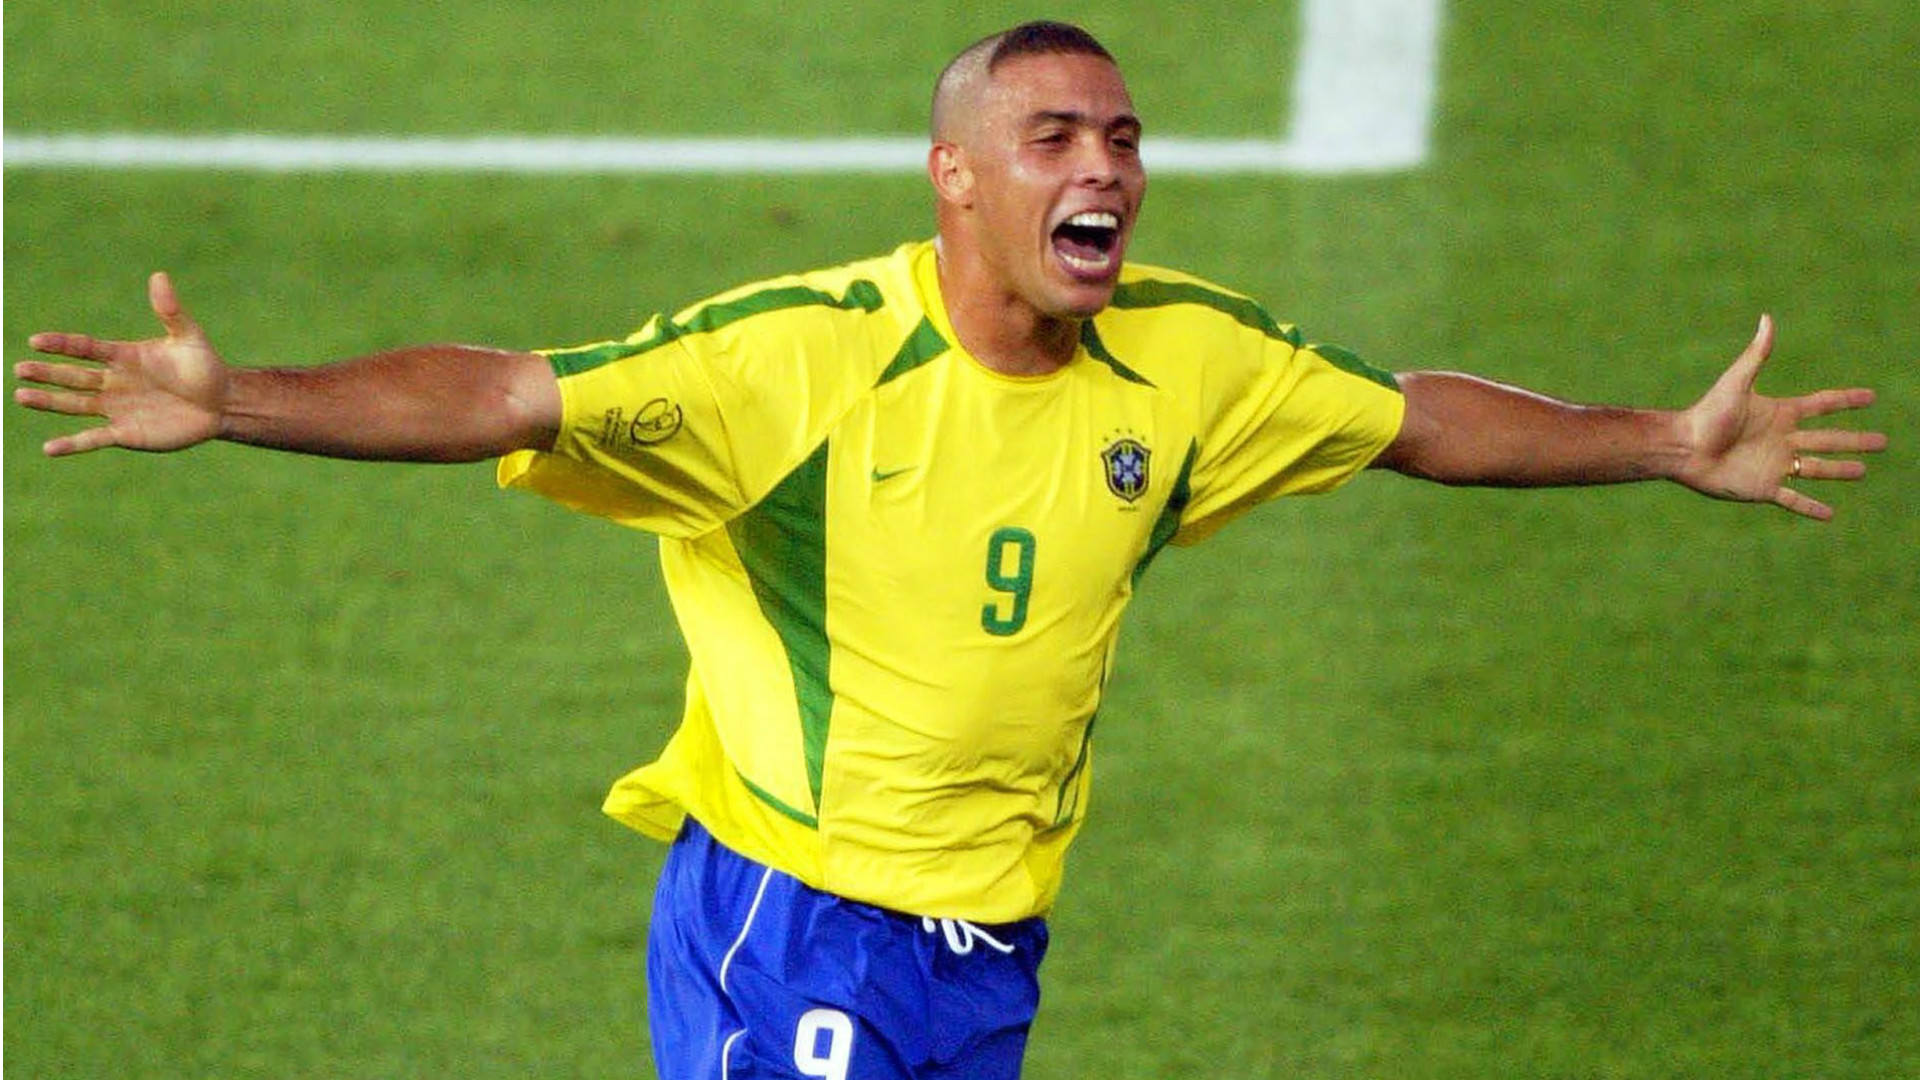 Cầu thủ Fabiano và áo số 9 của đội tuyển Brazil 